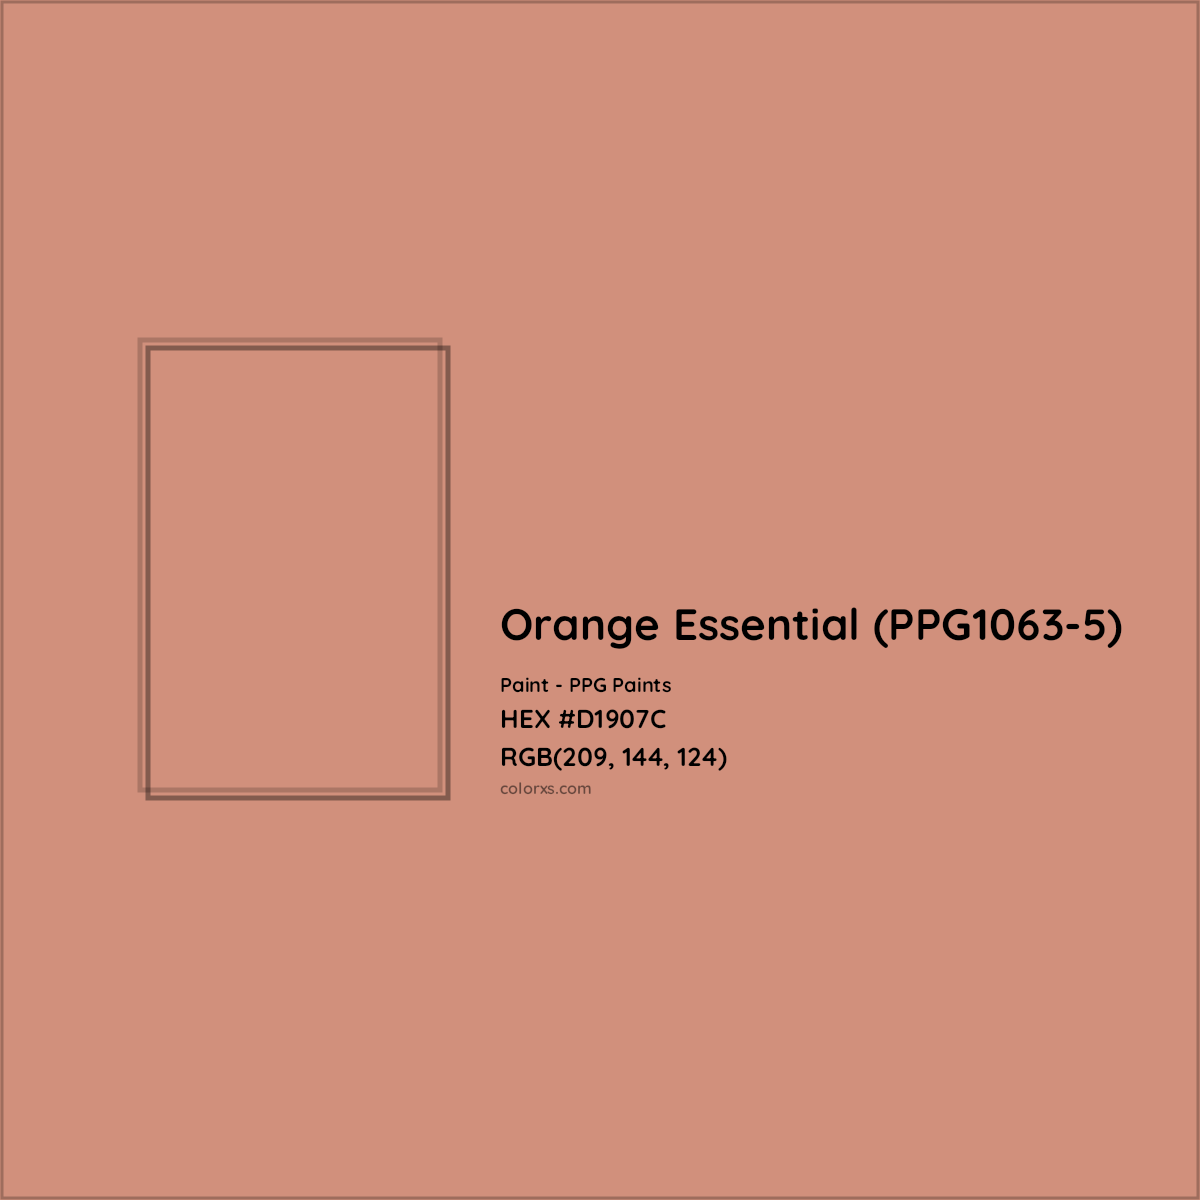 HEX #D1907C Orange Essential (PPG1063-5) Paint PPG Paints - Color Code